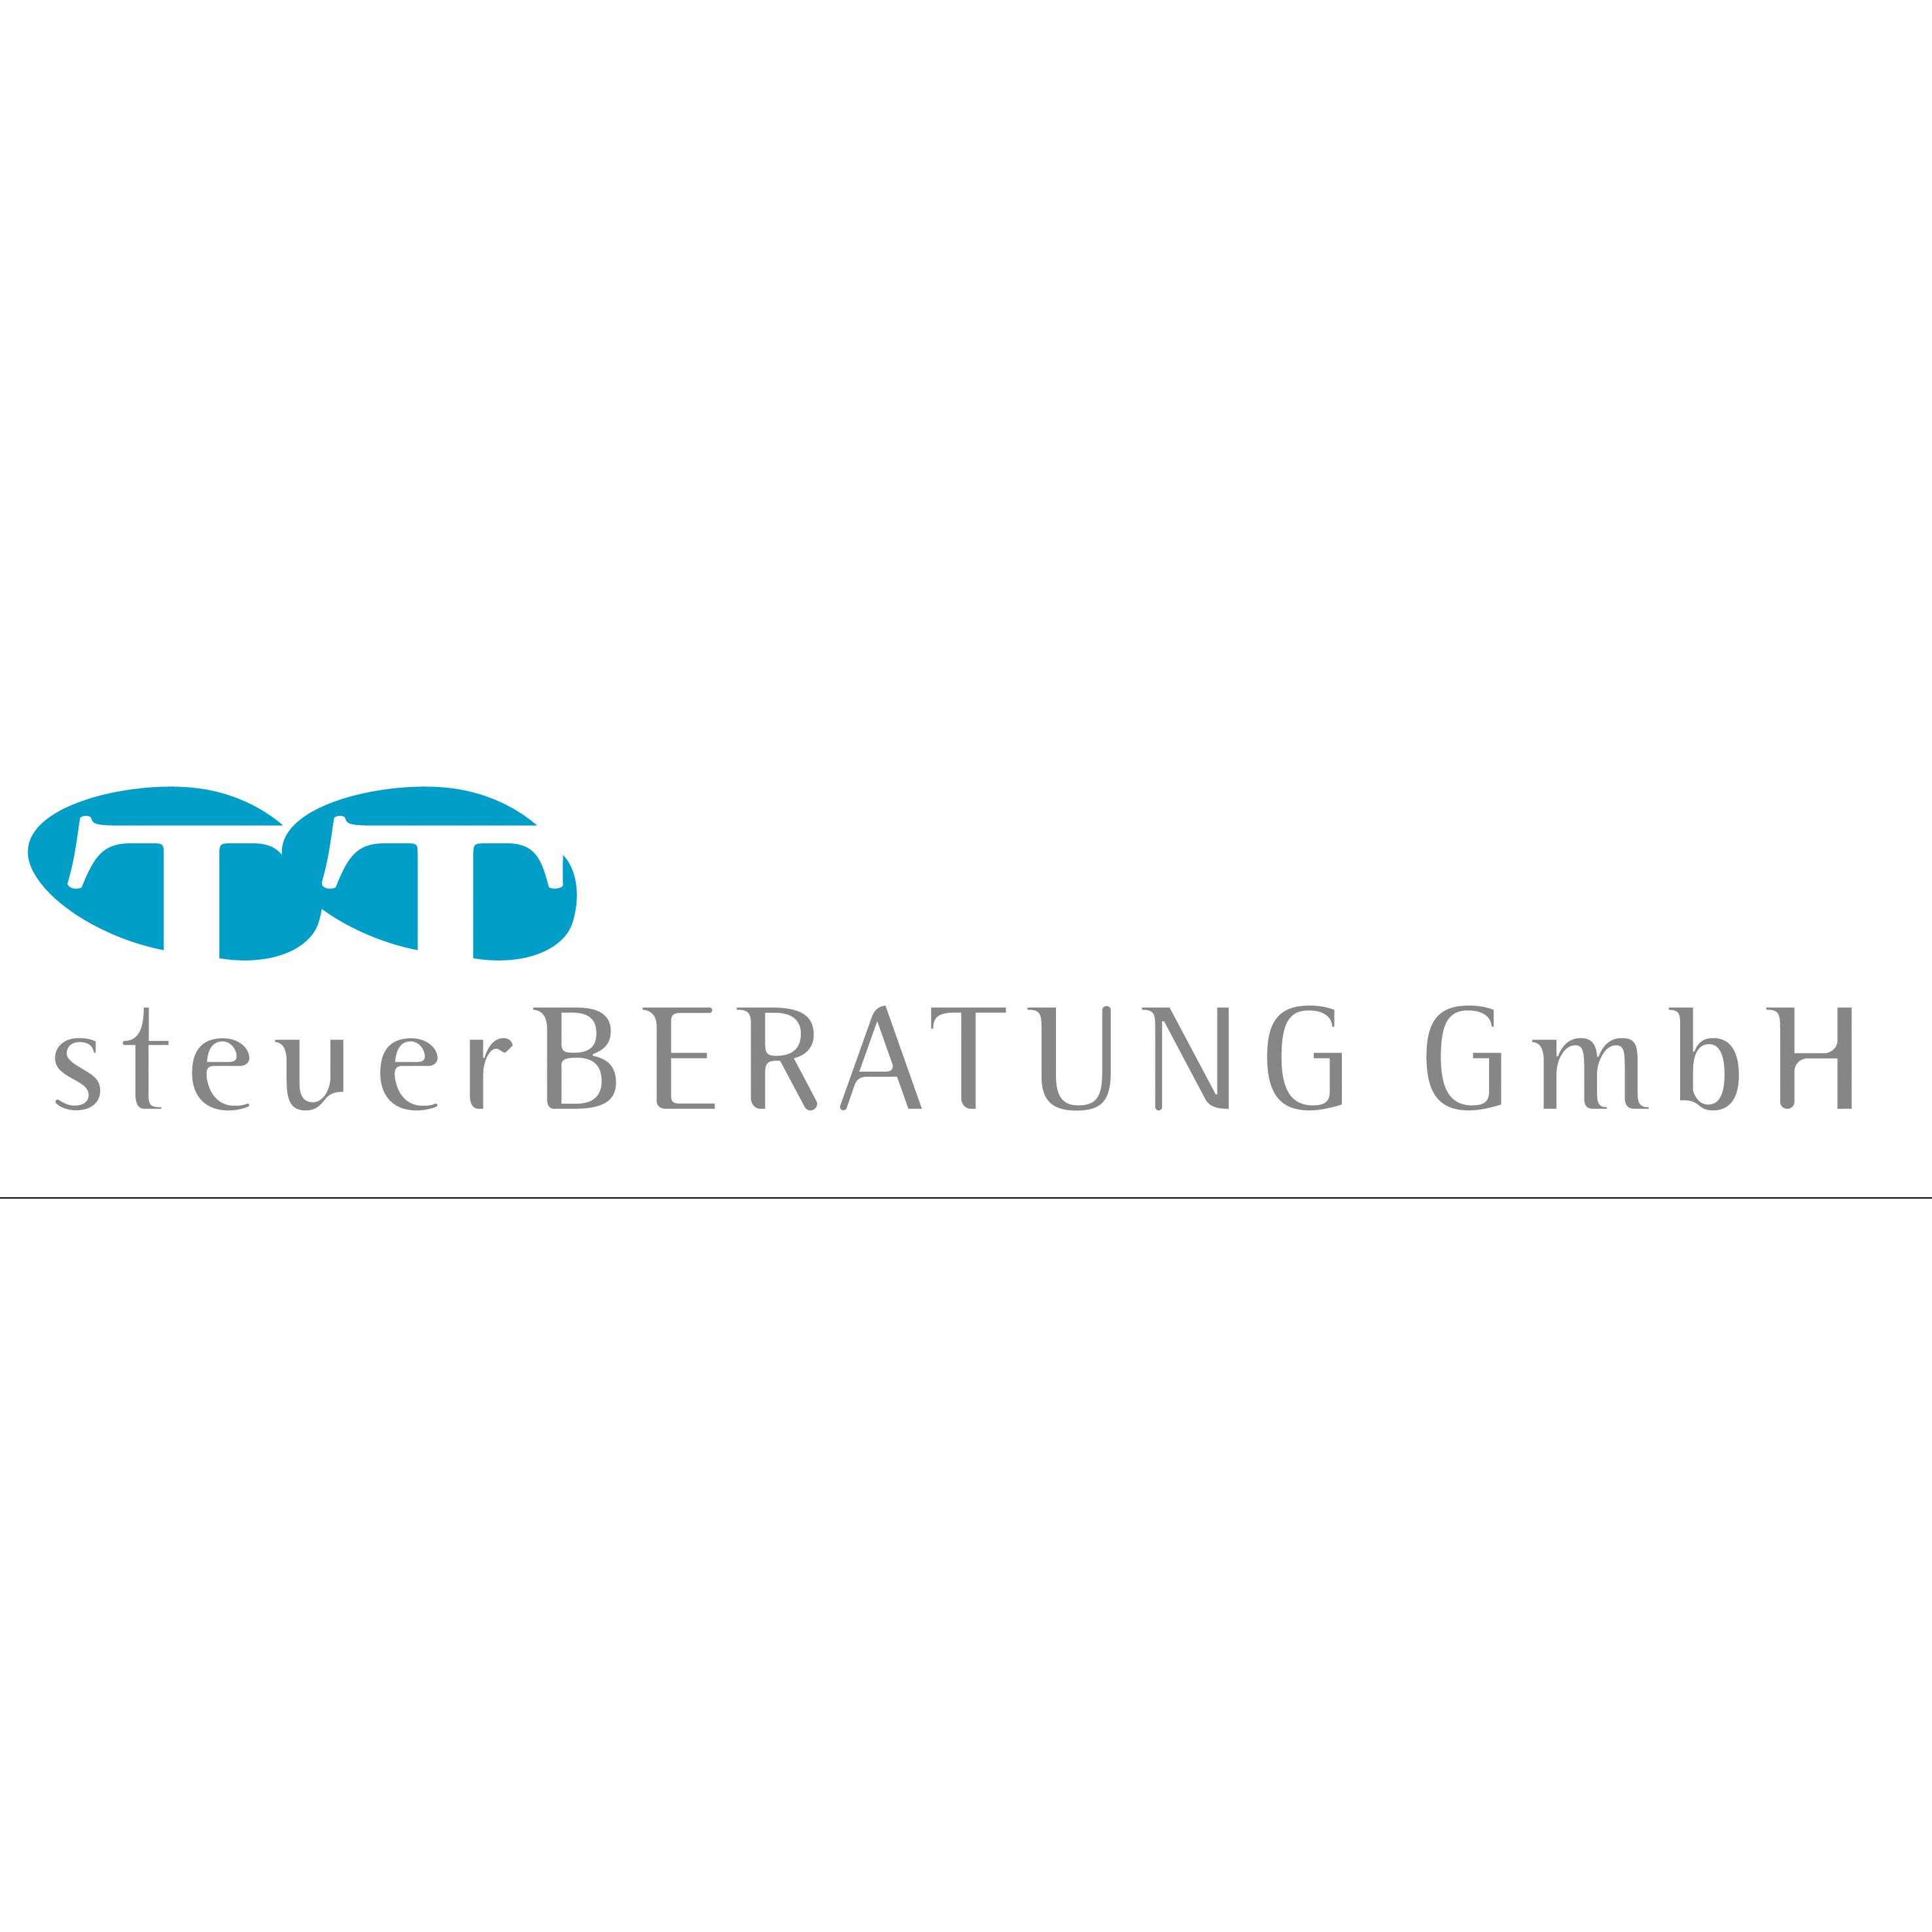 Logo von TT steuerBERATUNG GmbH